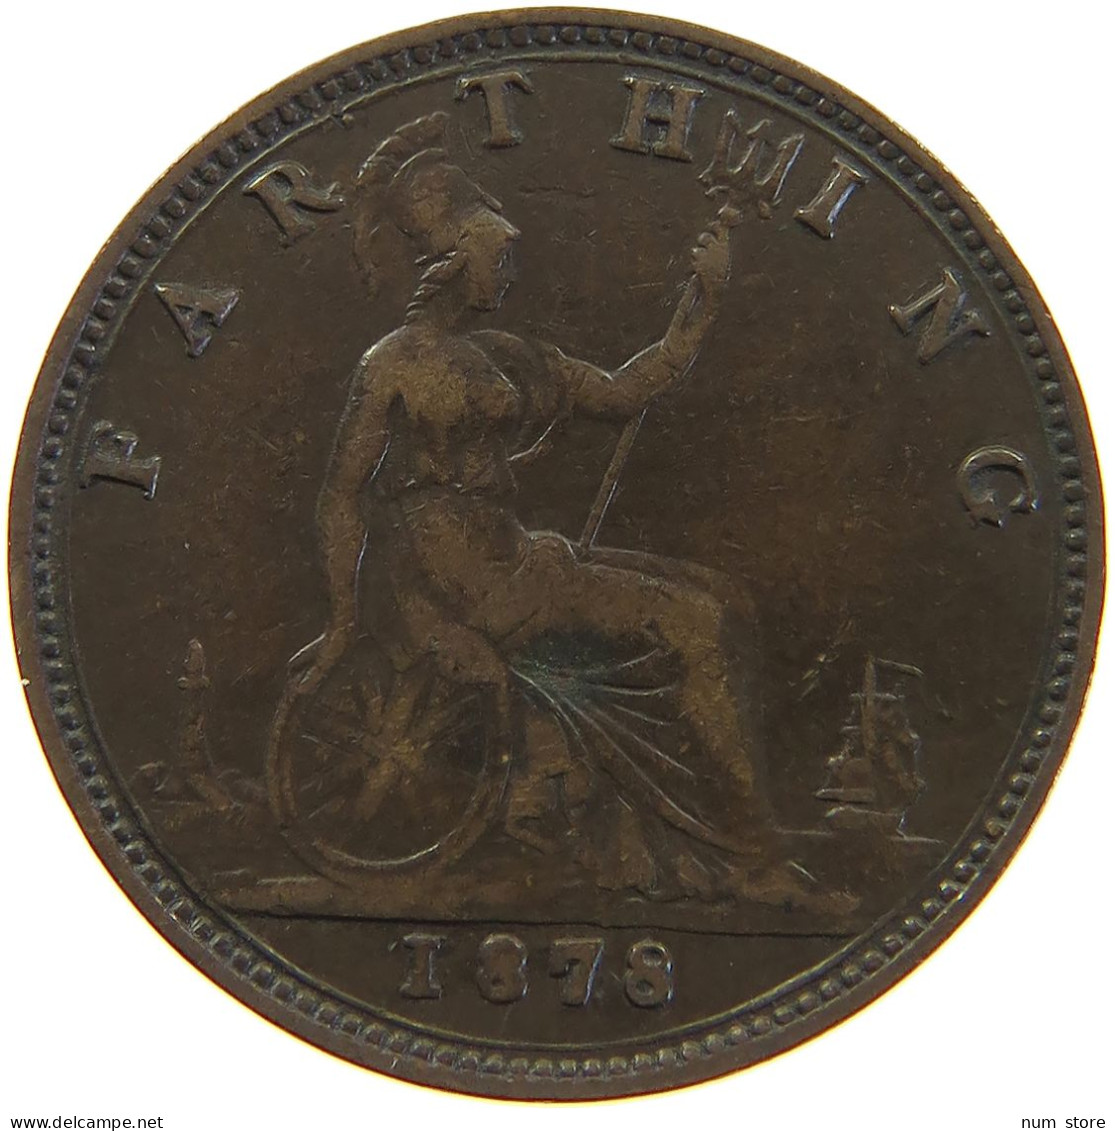 GREAT BRITAIN FARTHING 1878 Victoria 1837-1901 #c063 0115 - B. 1 Farthing